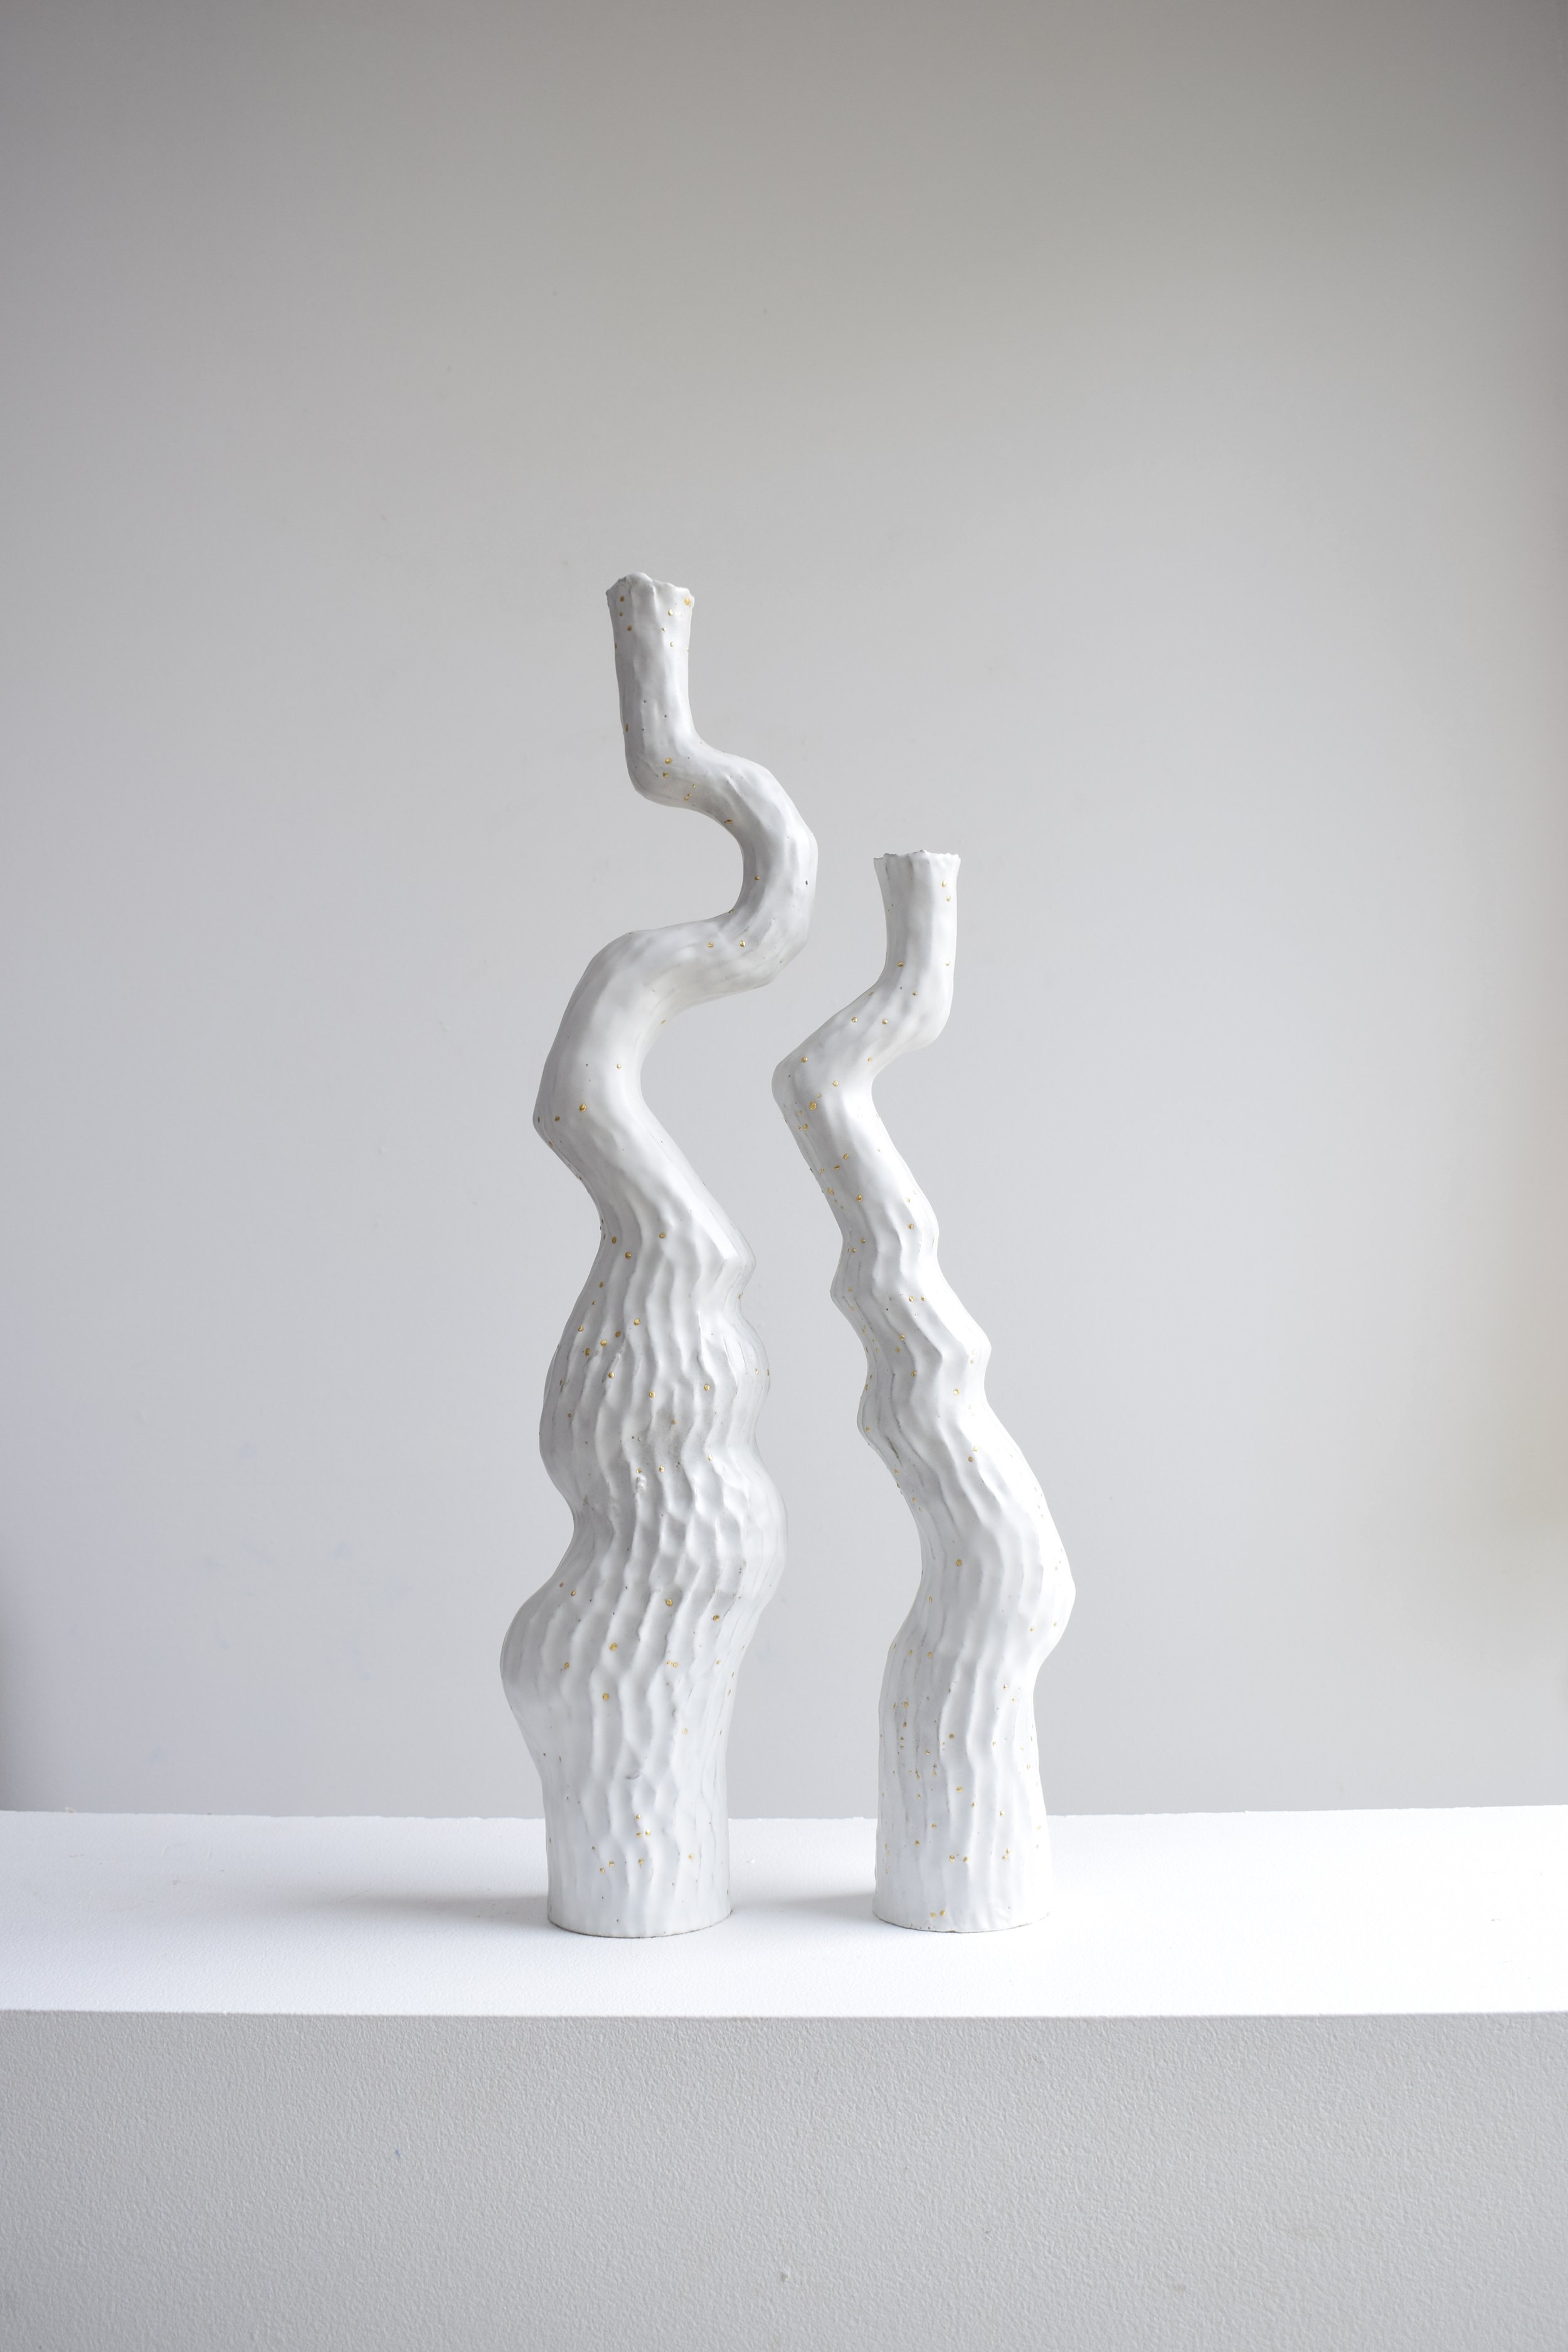 Shop — Kerryn Levy Ceramics